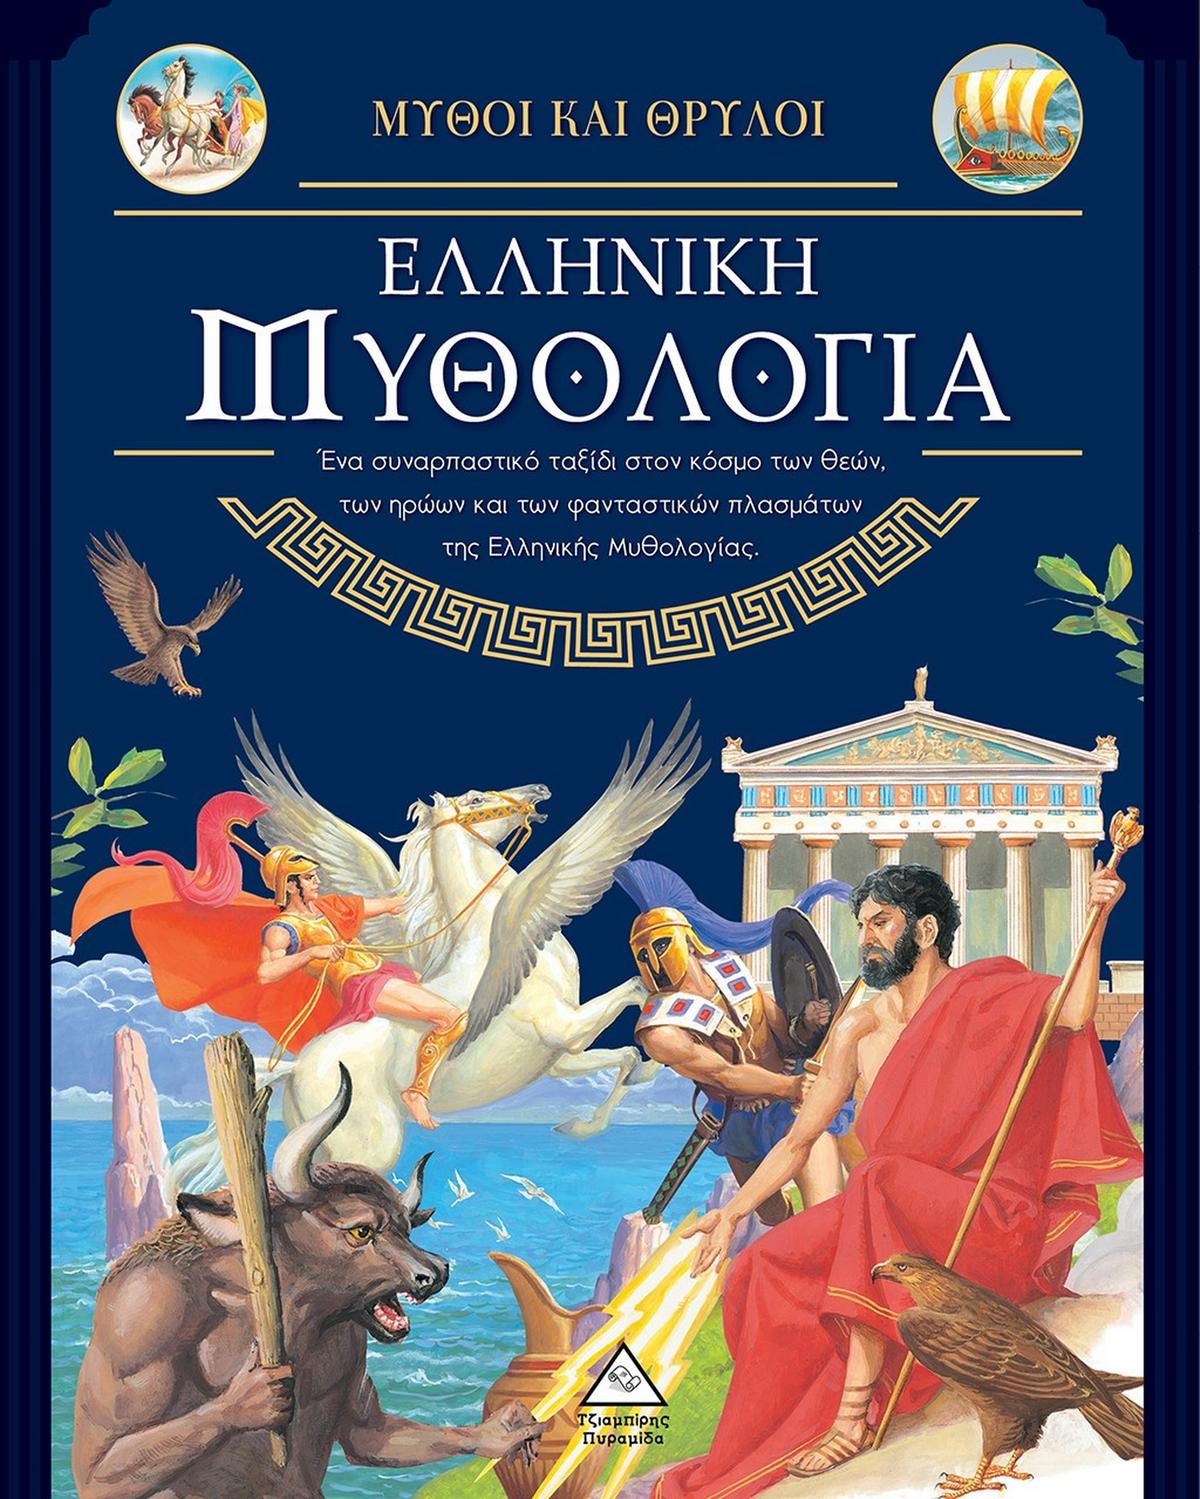 Μύθοι και θρύλοι: Ελληνική μυθολογία